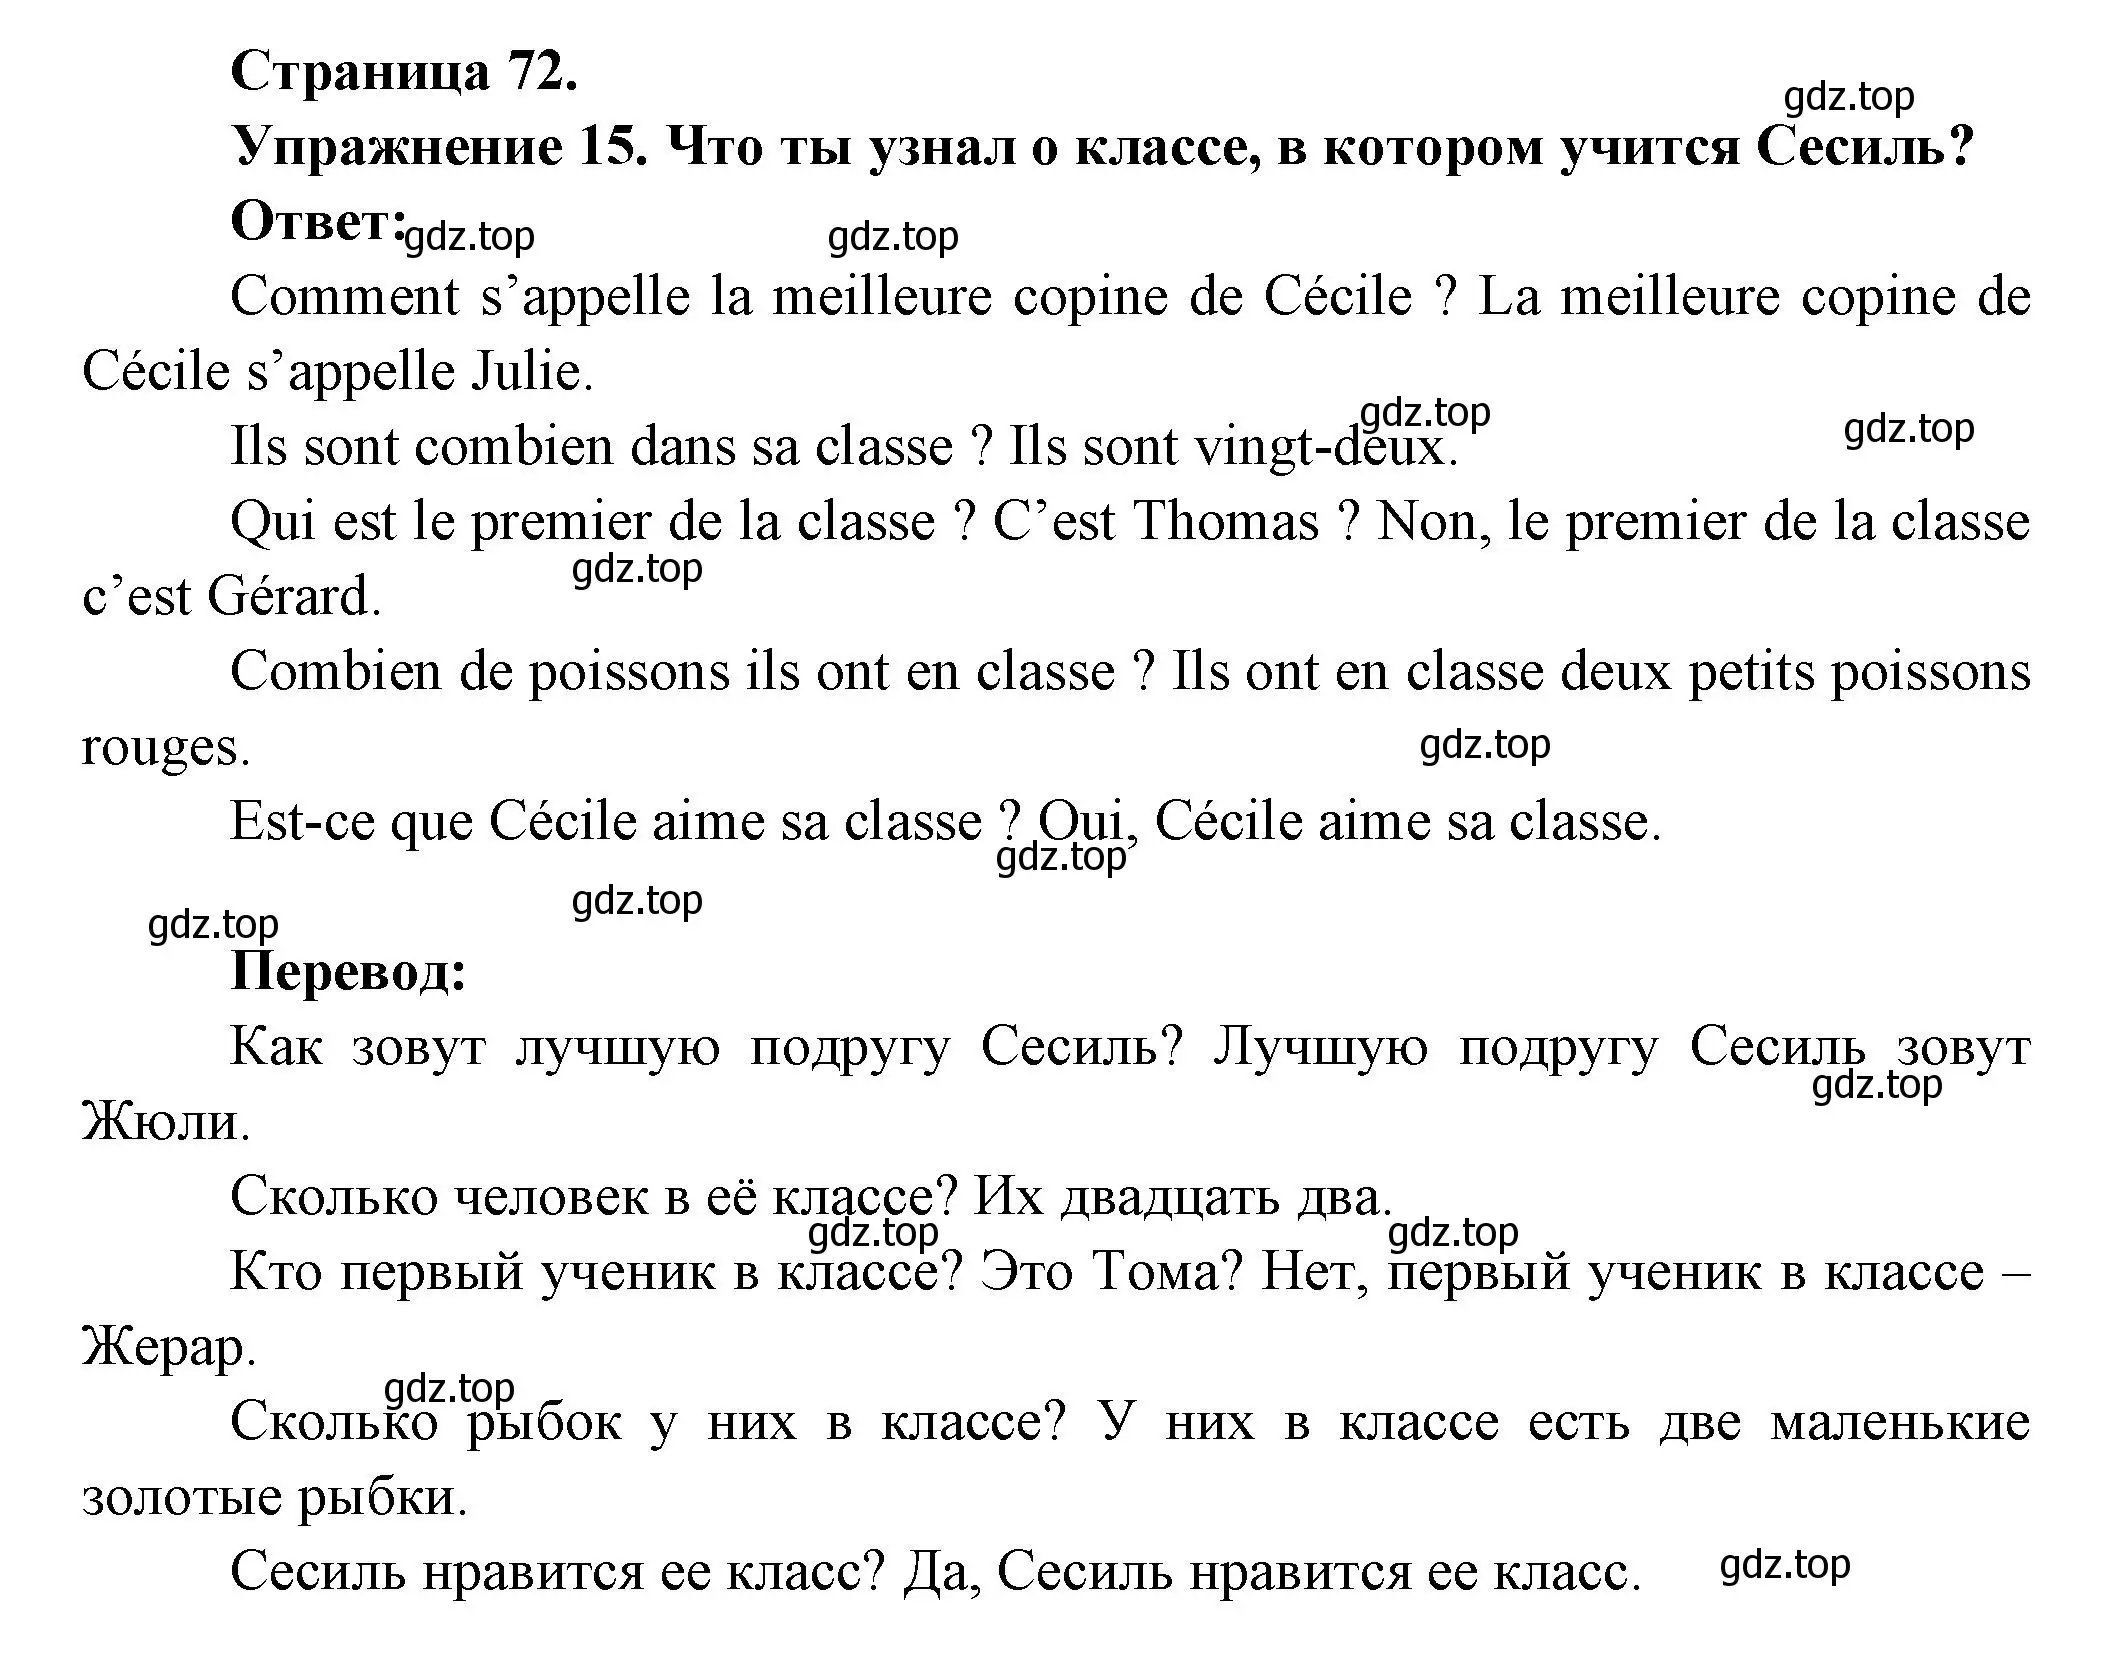 Решение номер 15 (страница 72) гдз по французскому языку 5 класс Береговская, Белосельская, учебник 1 часть